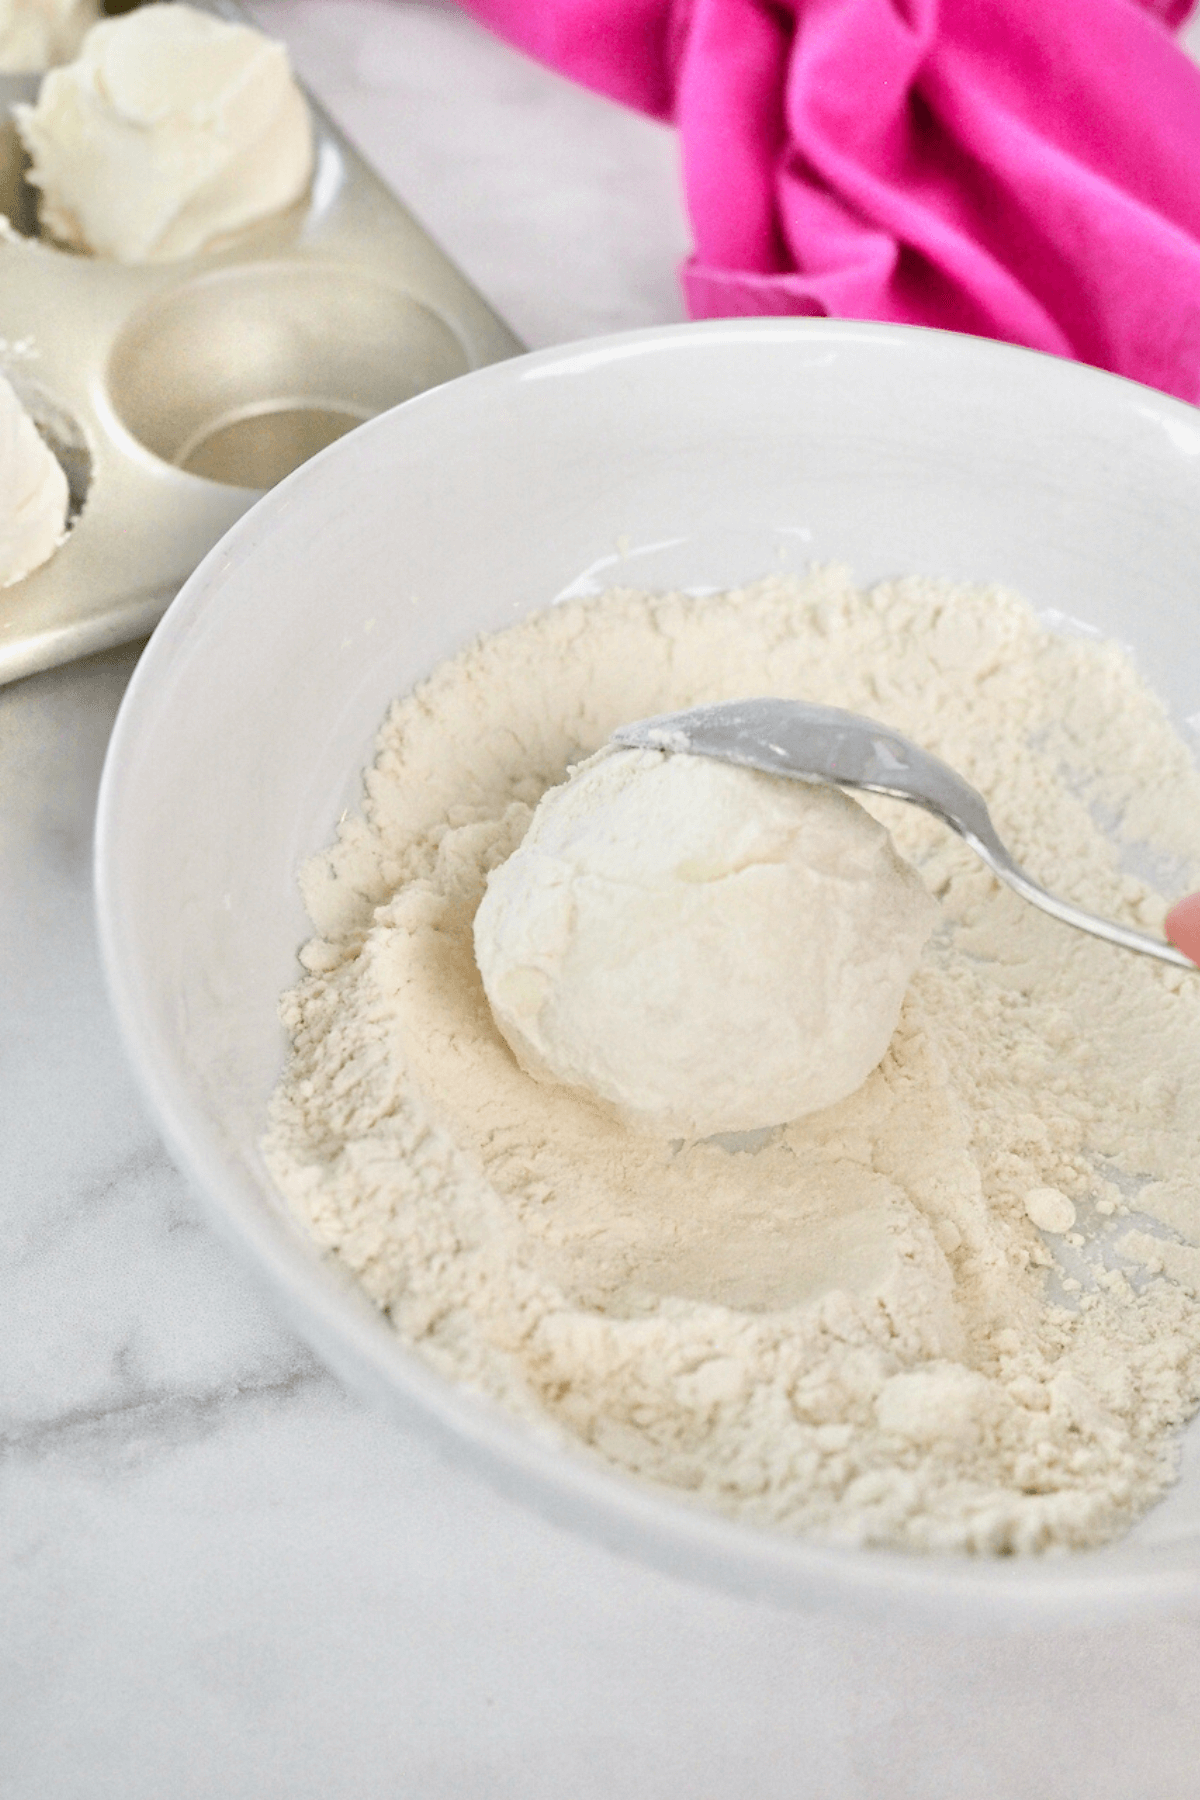 Rolling ice cream balls in flour. 